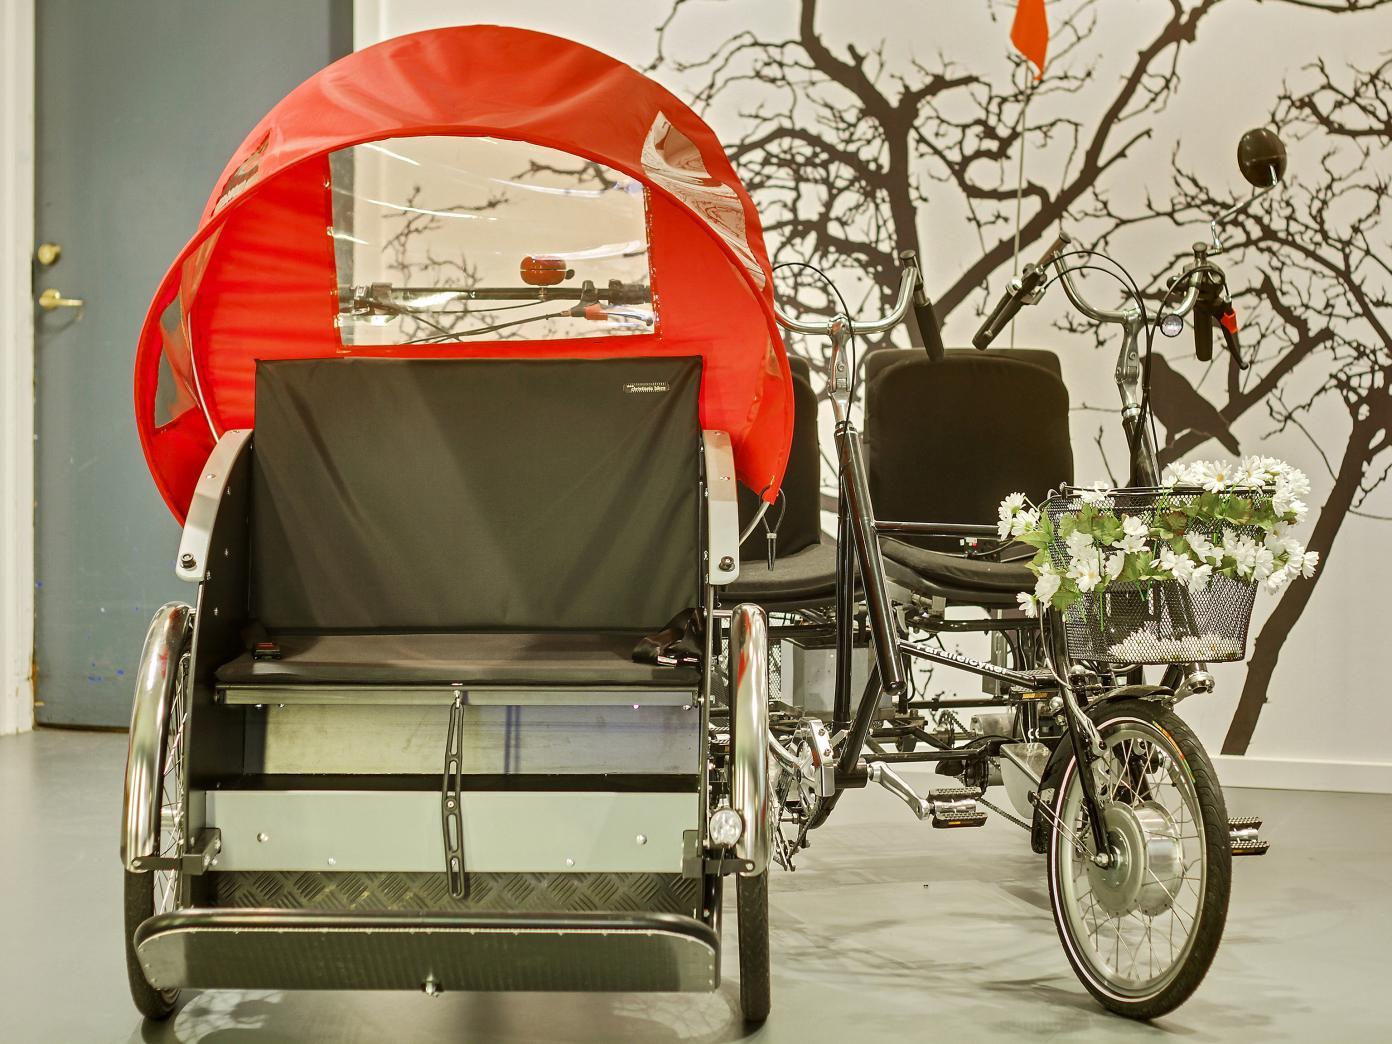 To cykler – en rickshawcykel, som er en moderne ladcykel til persontransport, og en duocykle med plads til to cyklende – parkeret indenfor.